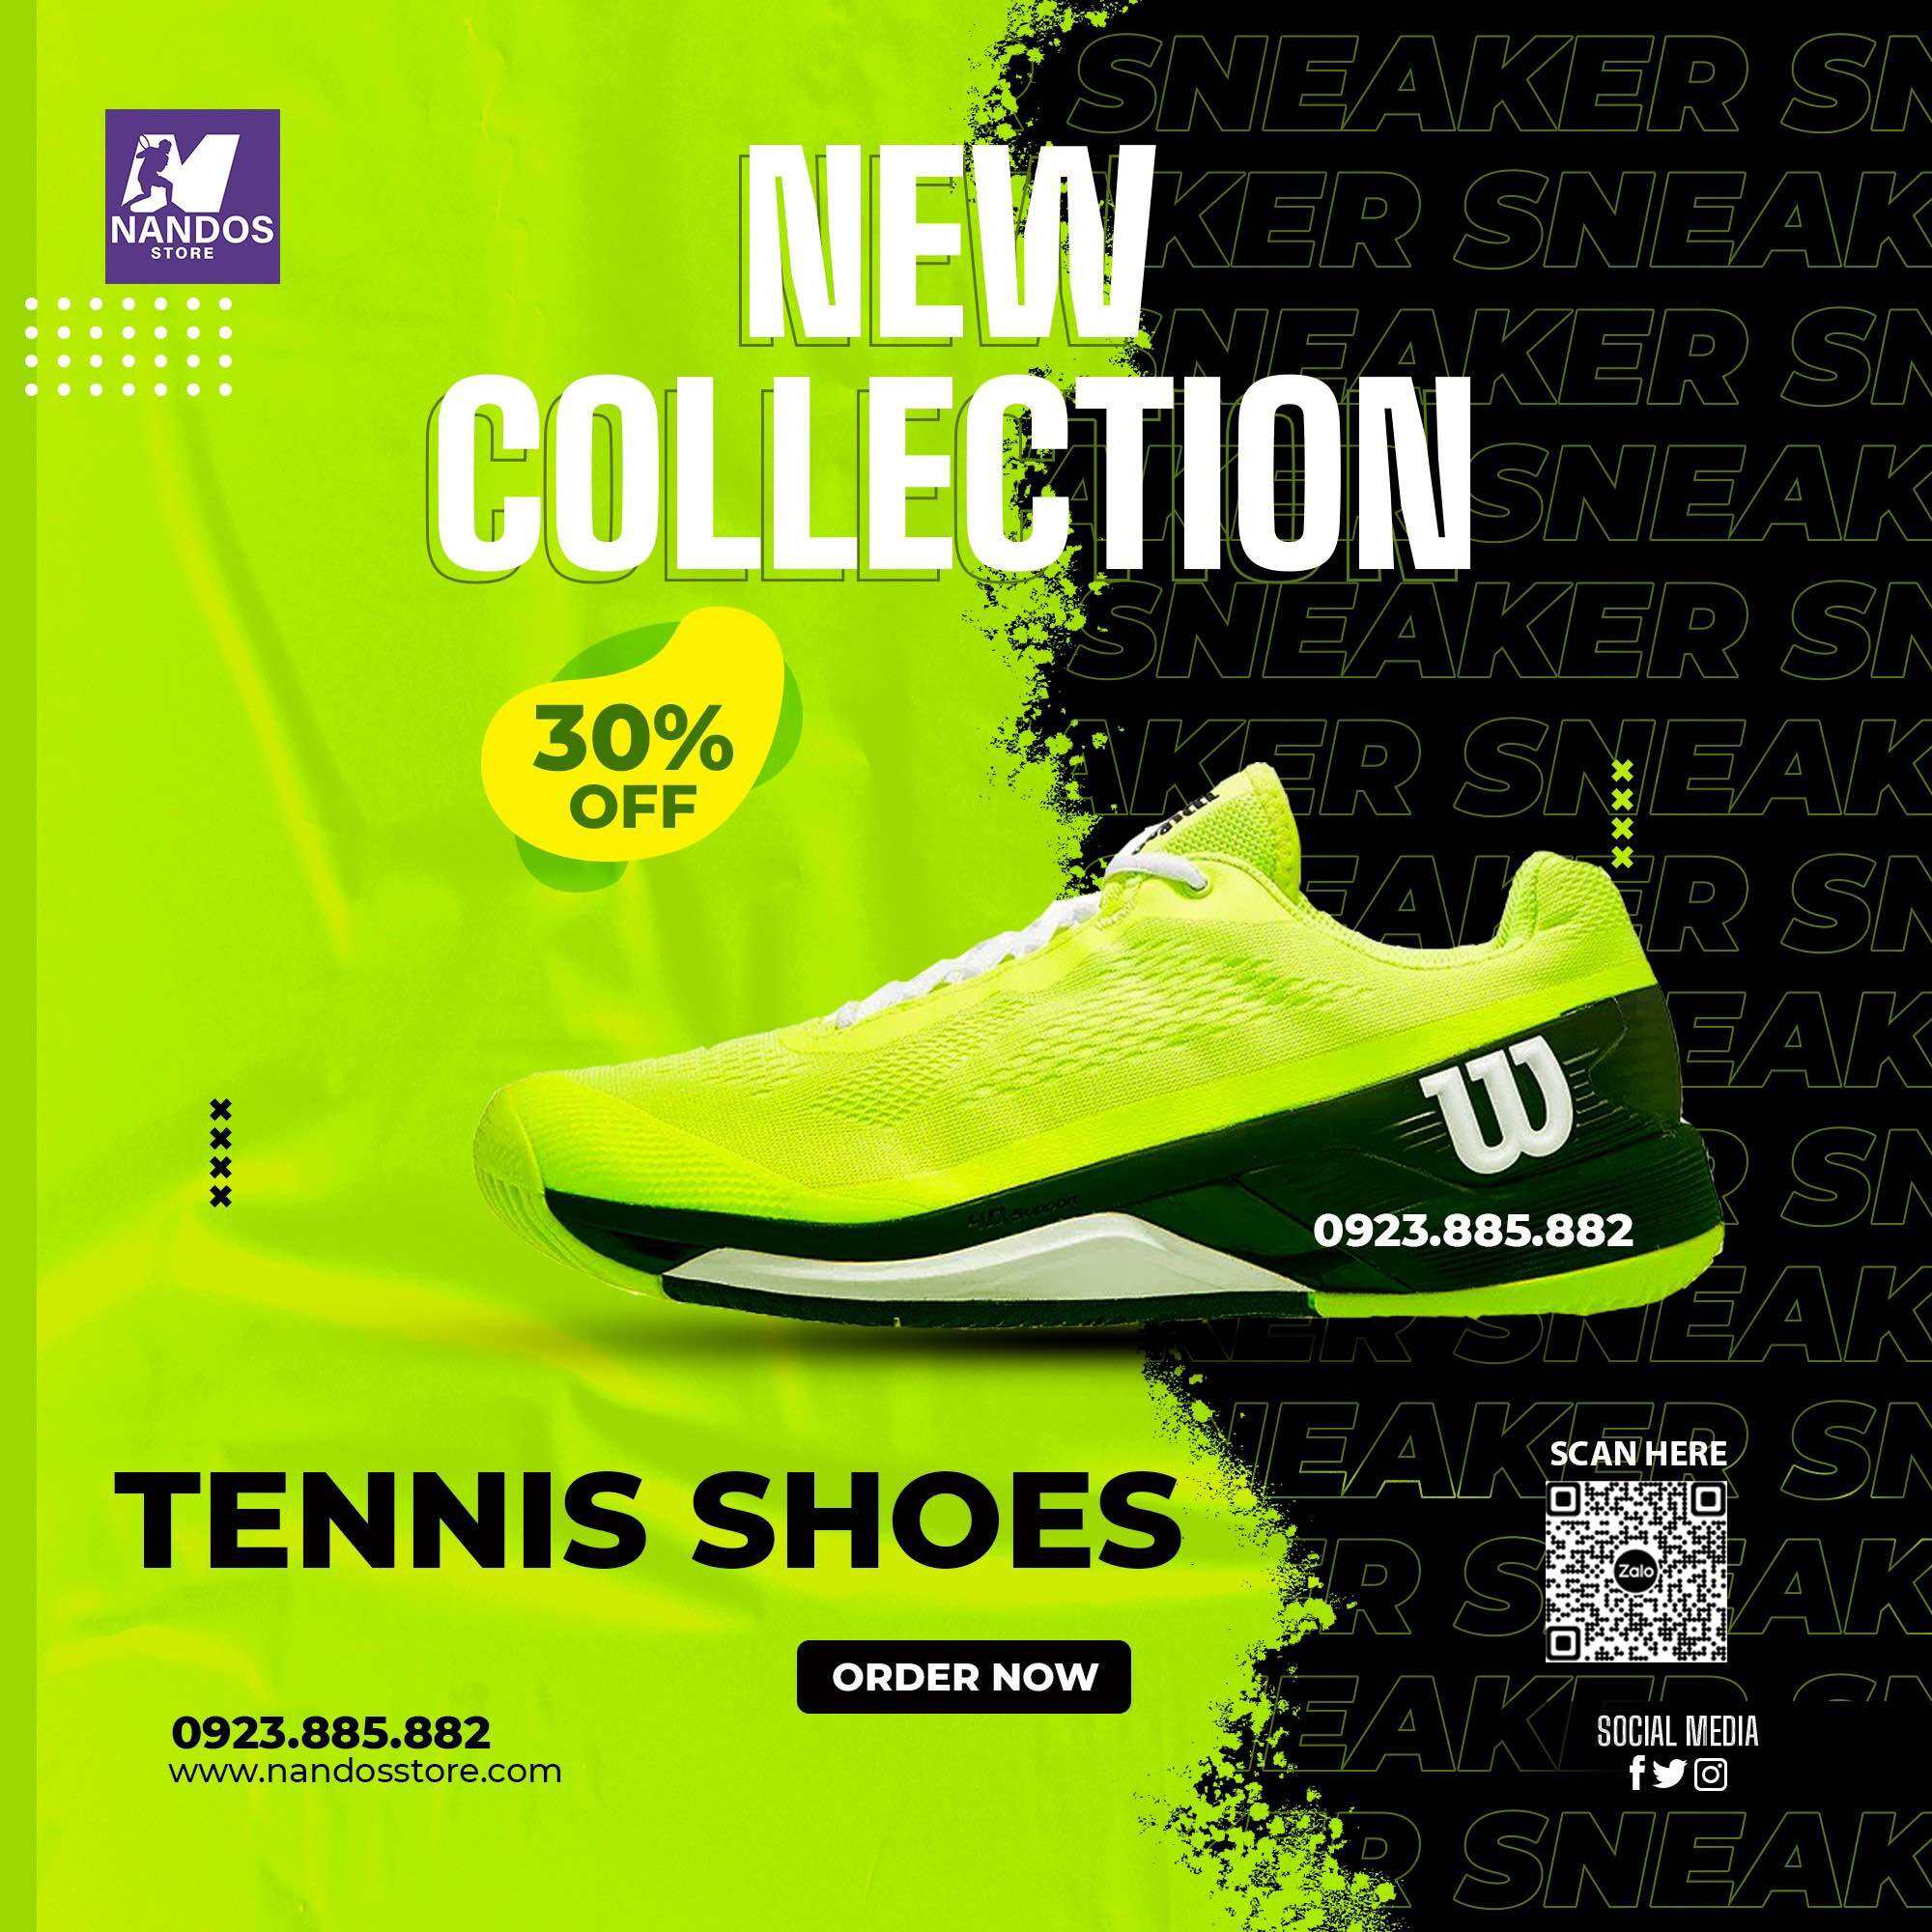 Giày tennis wilson chính hãng RuSh pro V4 black neon